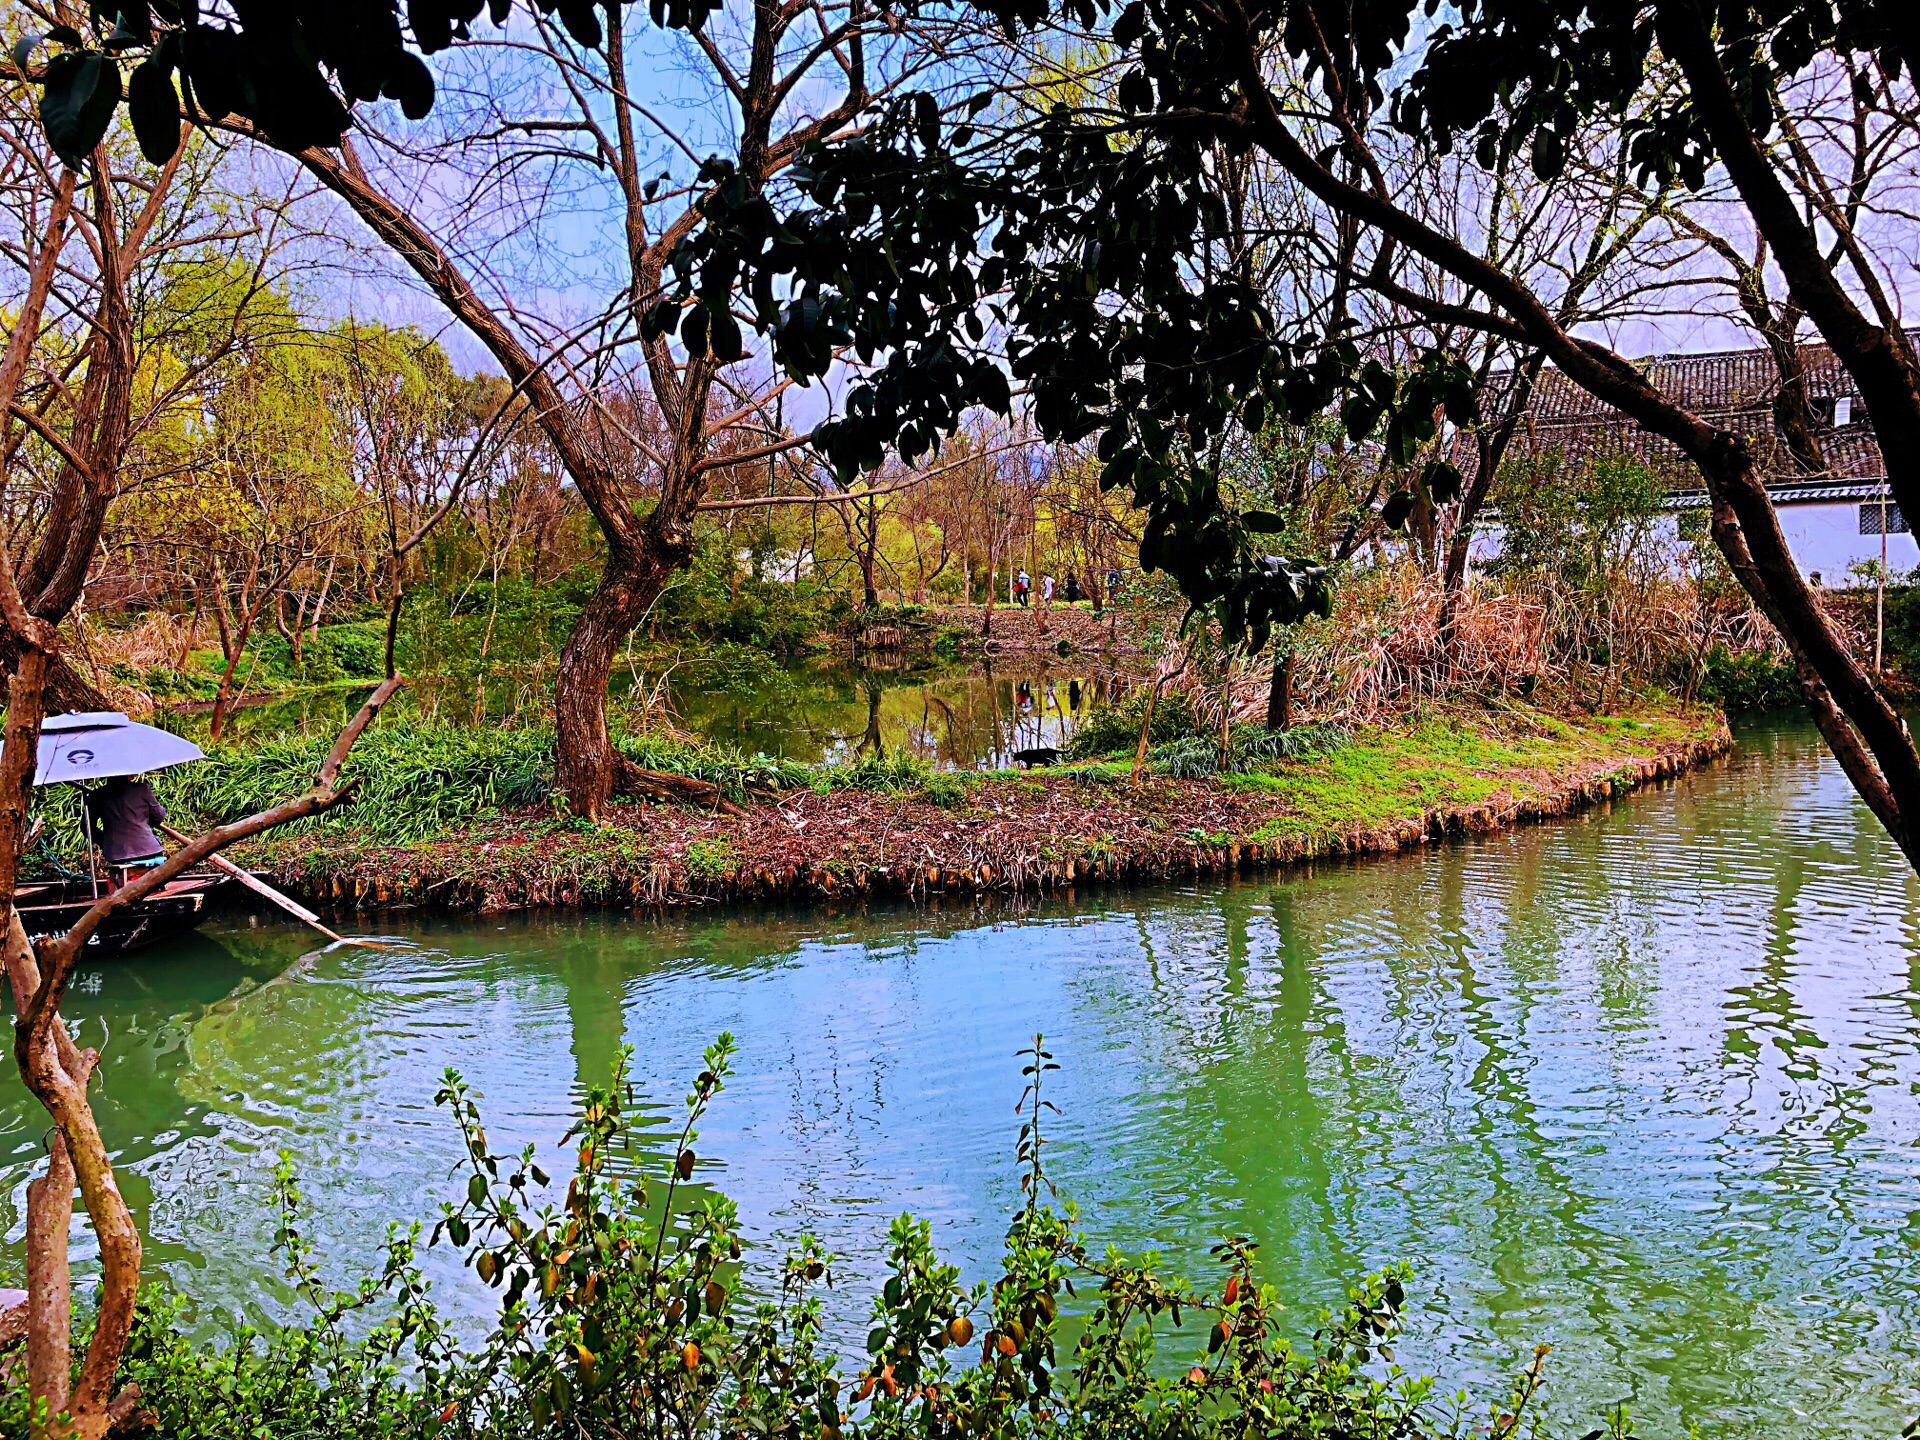 西溪湿地一日游 - 旅游产品 - 杭州鑫桥会展有限公司